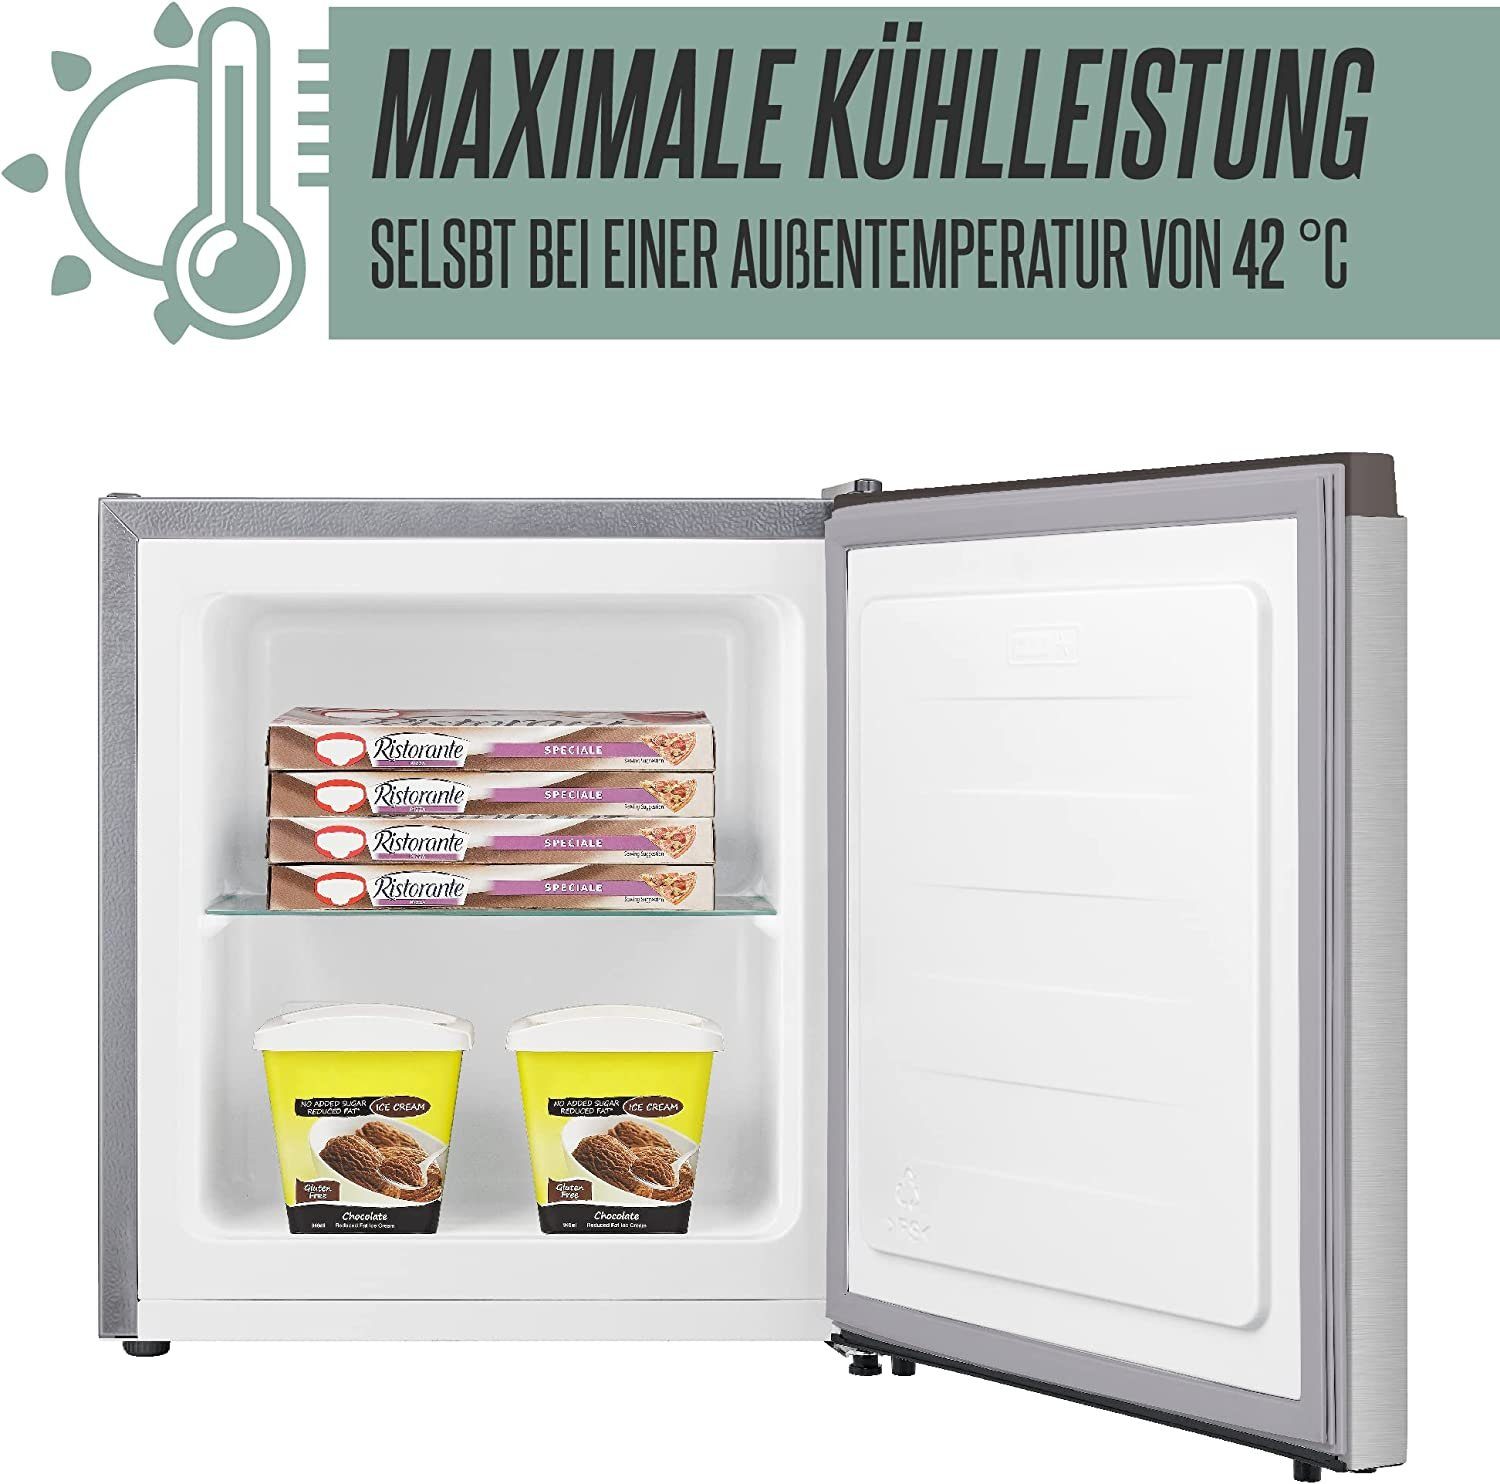 Heinrich´s Gefrierschrank Gefrierbox, breit, 51 cm 39db, Edelstahl Freezer HGB hoch, 4088, 44 cm Tiefkühlen 34L perfekt Mini Freezer